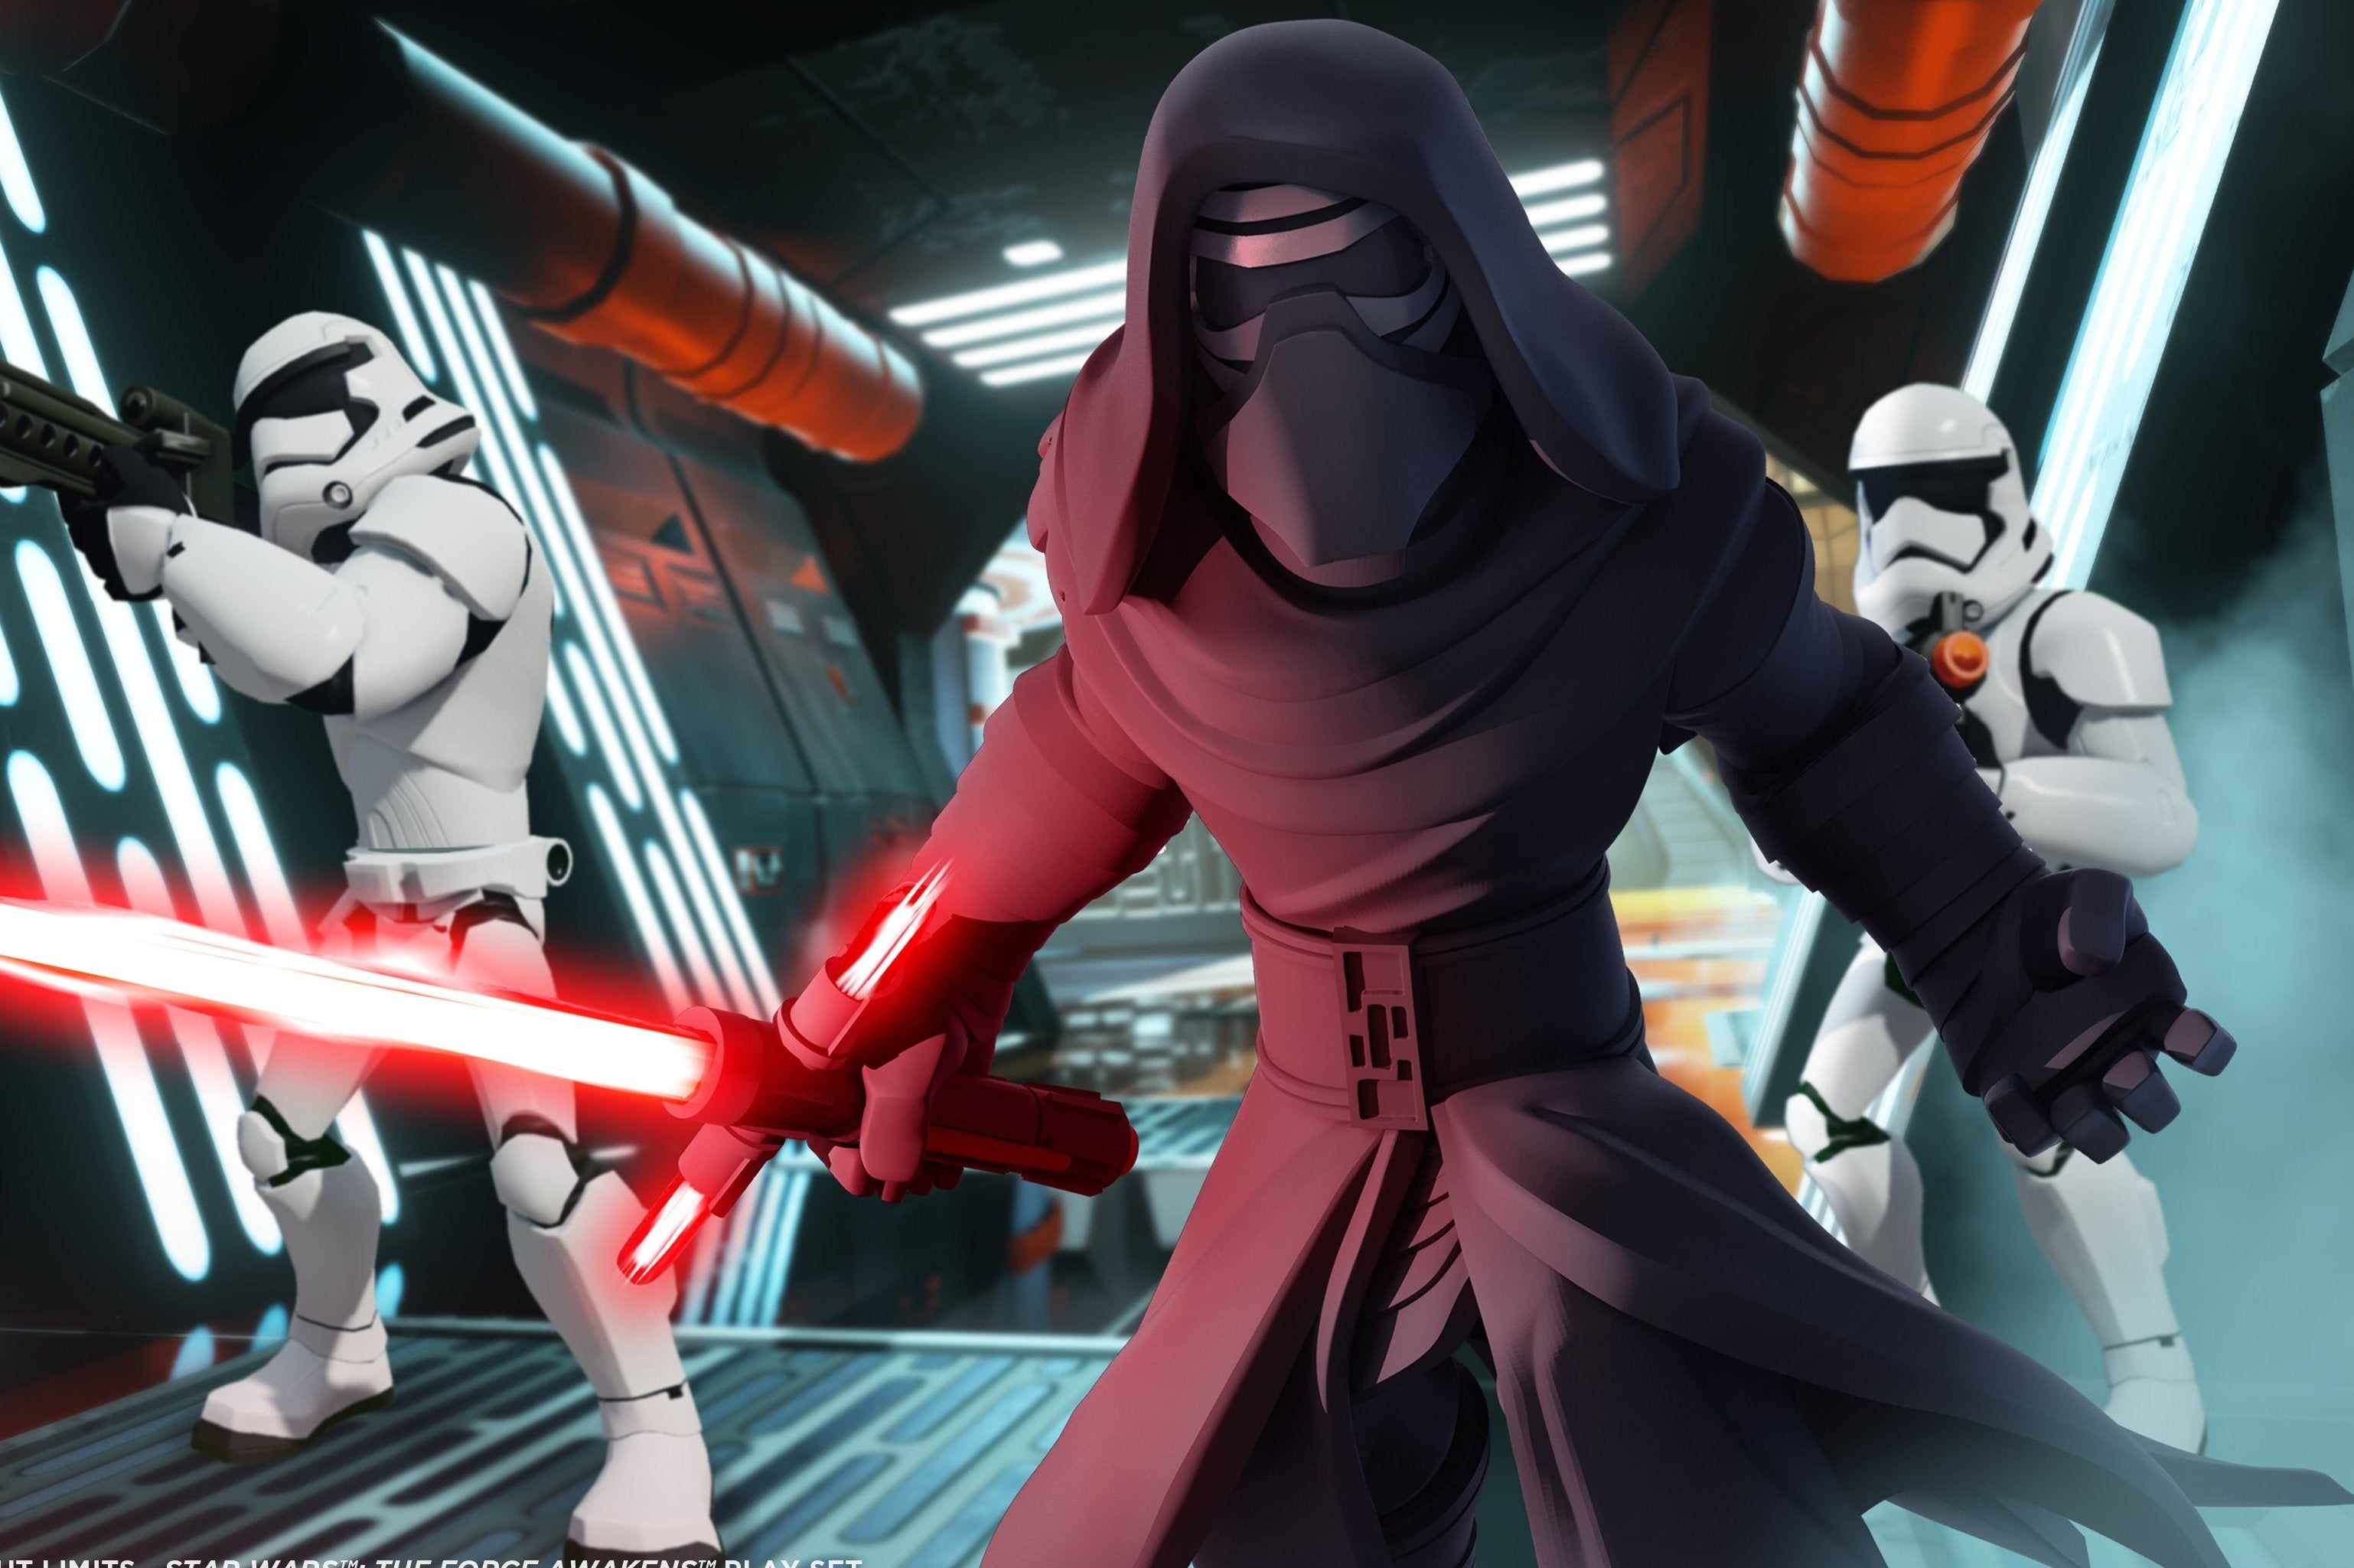 Imagem para Revelado o Playset de Star Wars: The Force Awakens para Disney Infinity 3.0